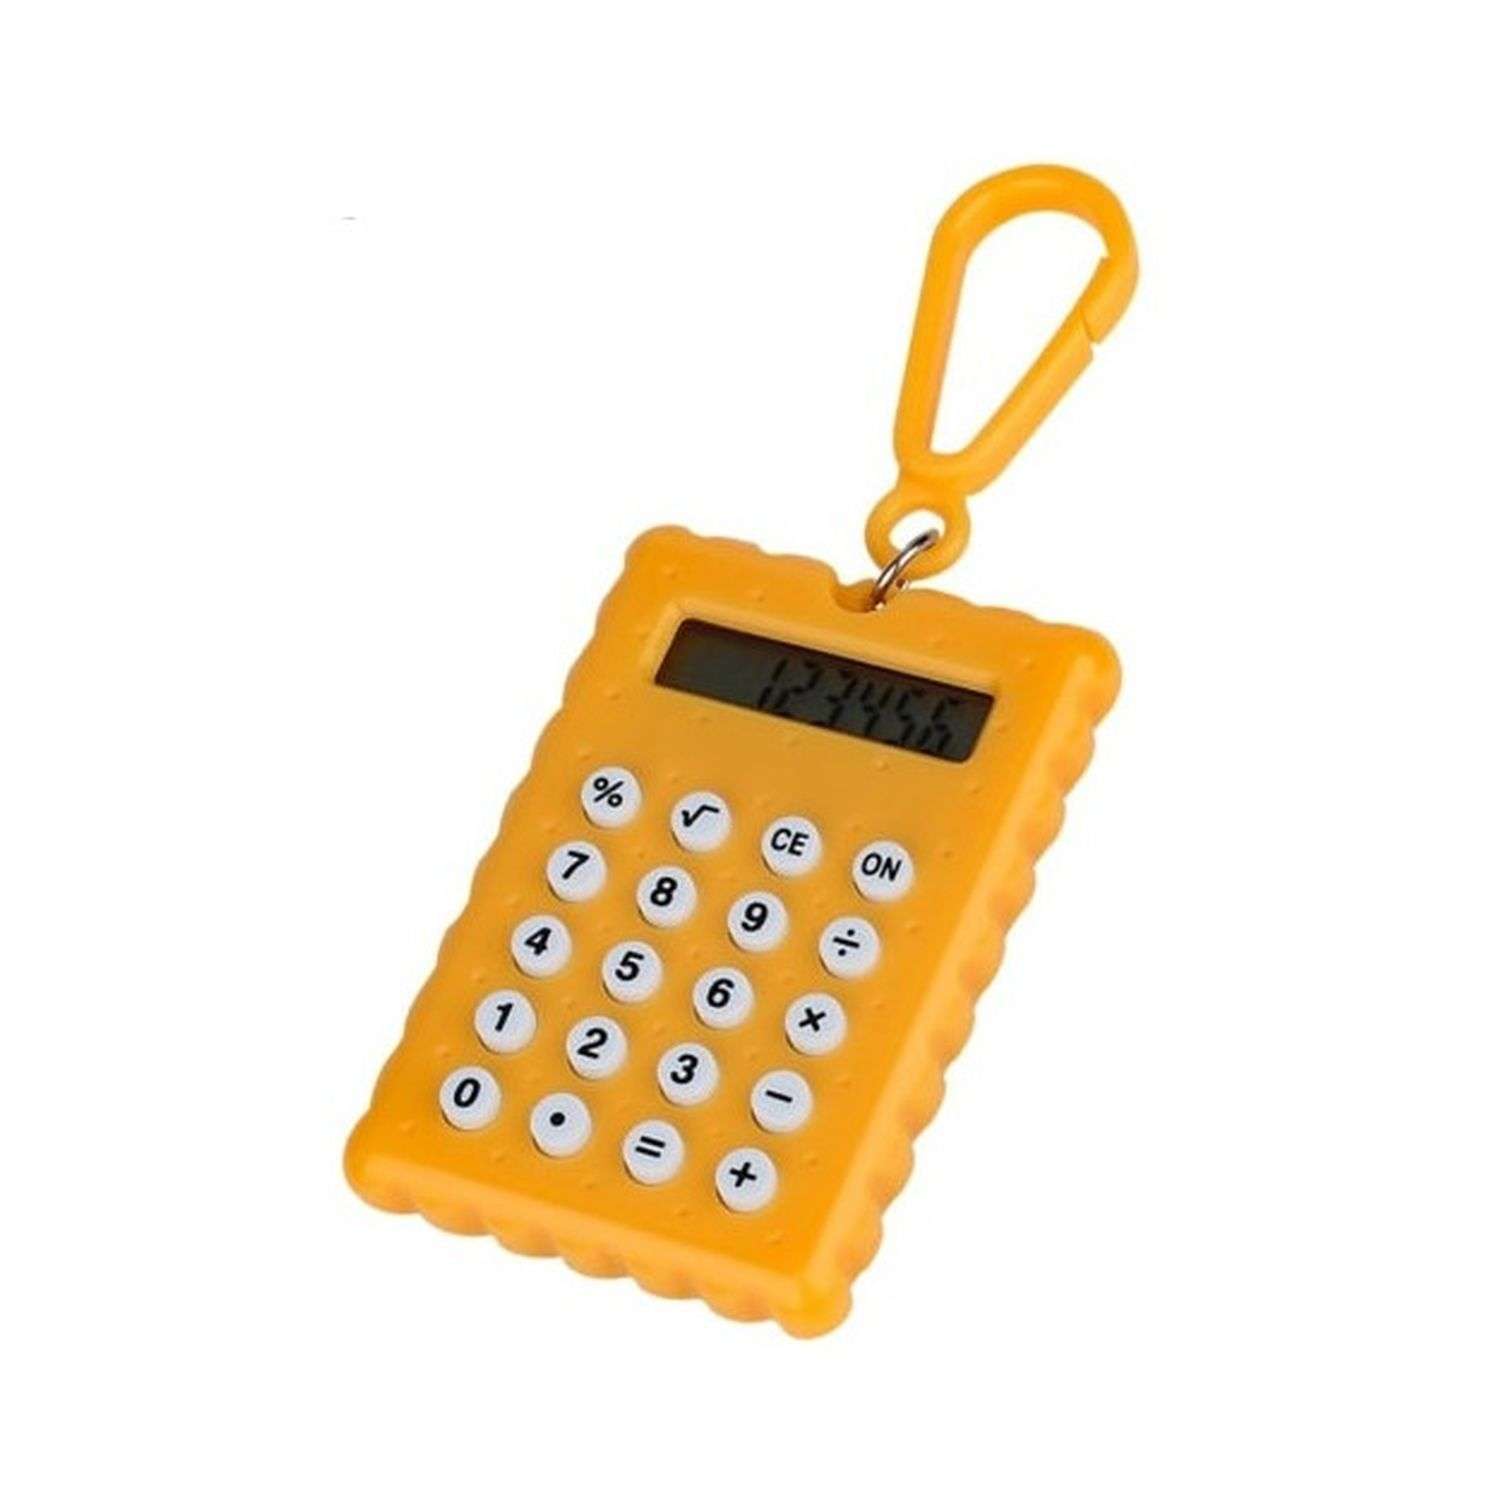 Брелок-калькулятор Uniglodis Печенька оранжевый - фото 1